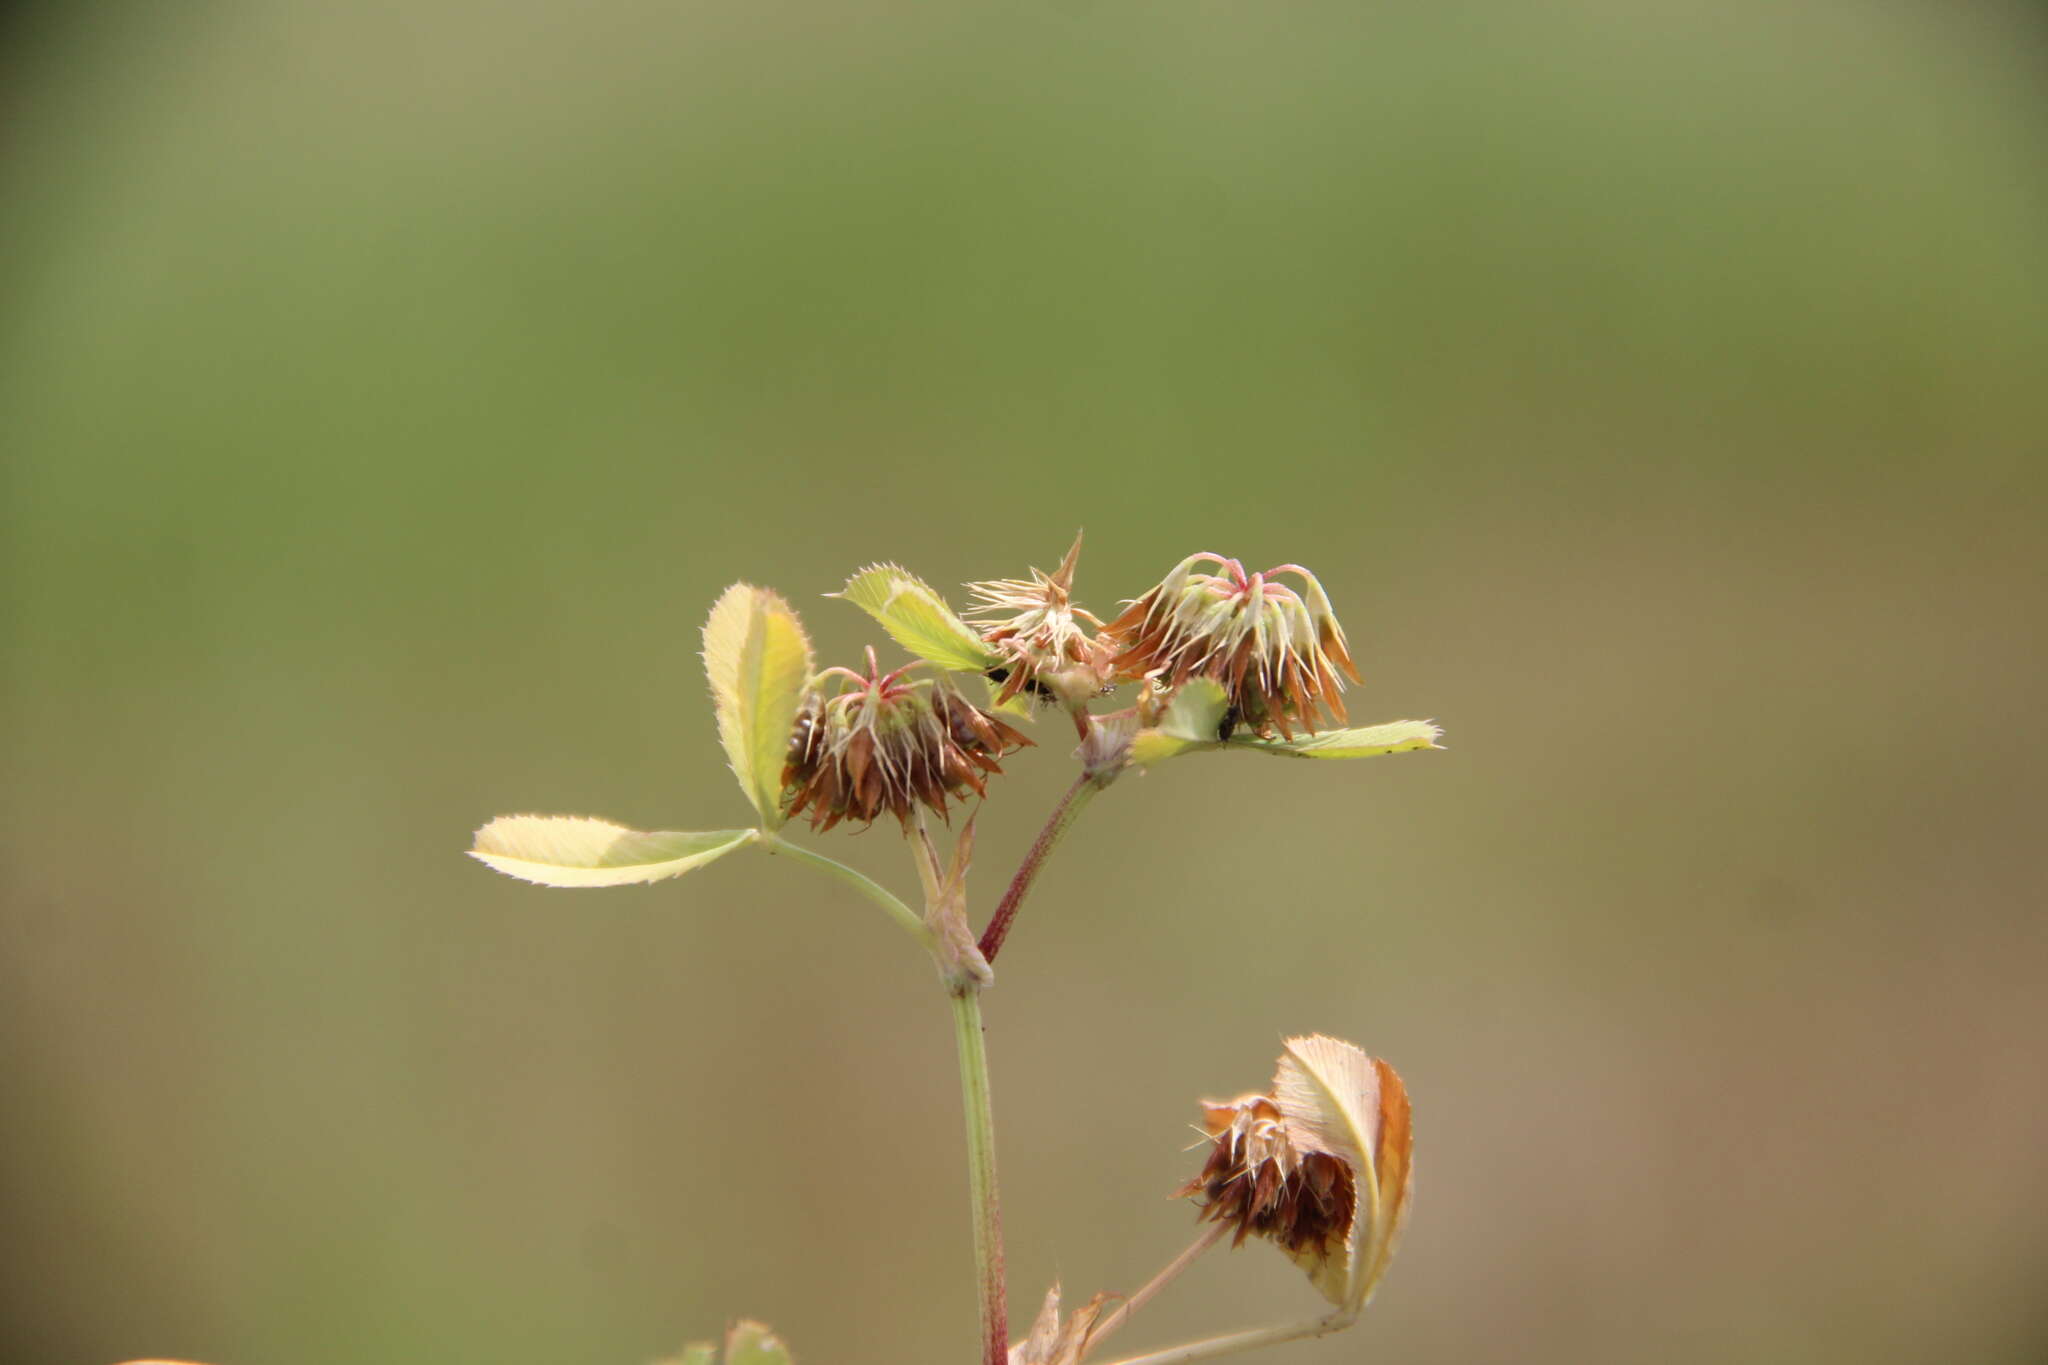 Image of Trifolium angulatum Waldst. & Kit.